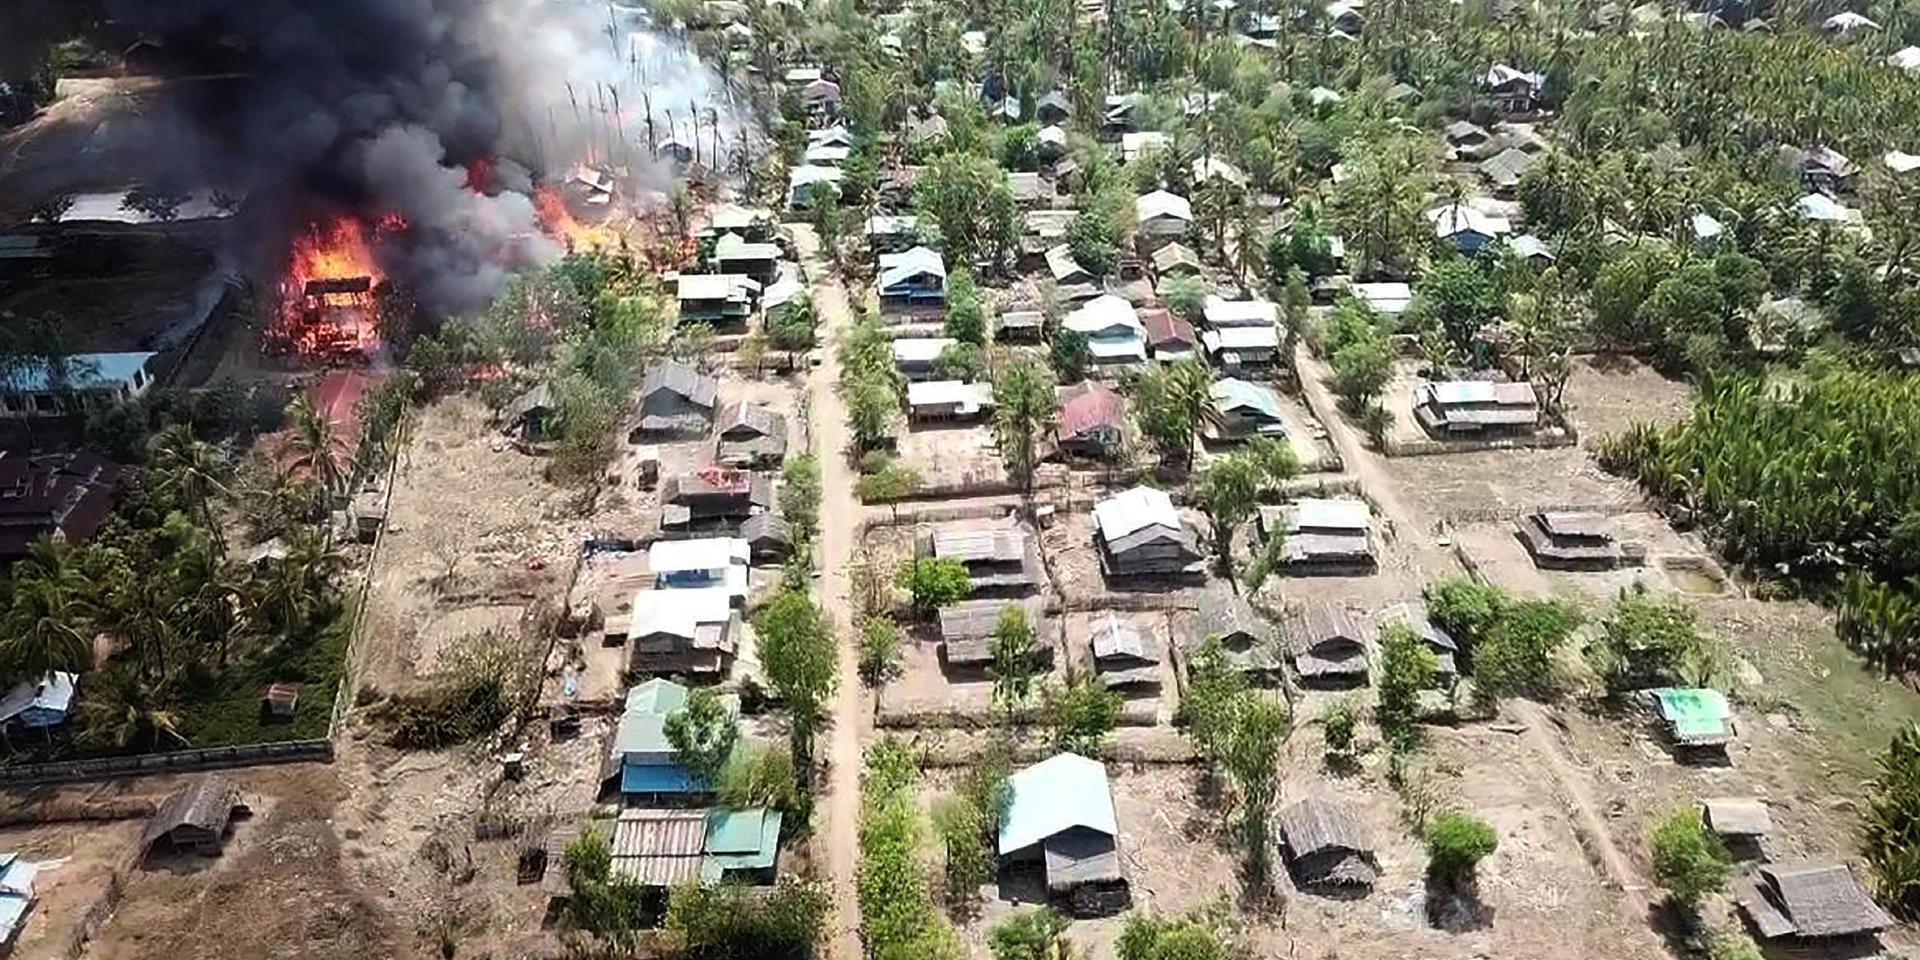 Byn Let Kar står i brand efter bittra strider mellan Arakan Army och Myanmars militär i maj 2020. Arakan Army söker större självständighet för Rakhinestaten.